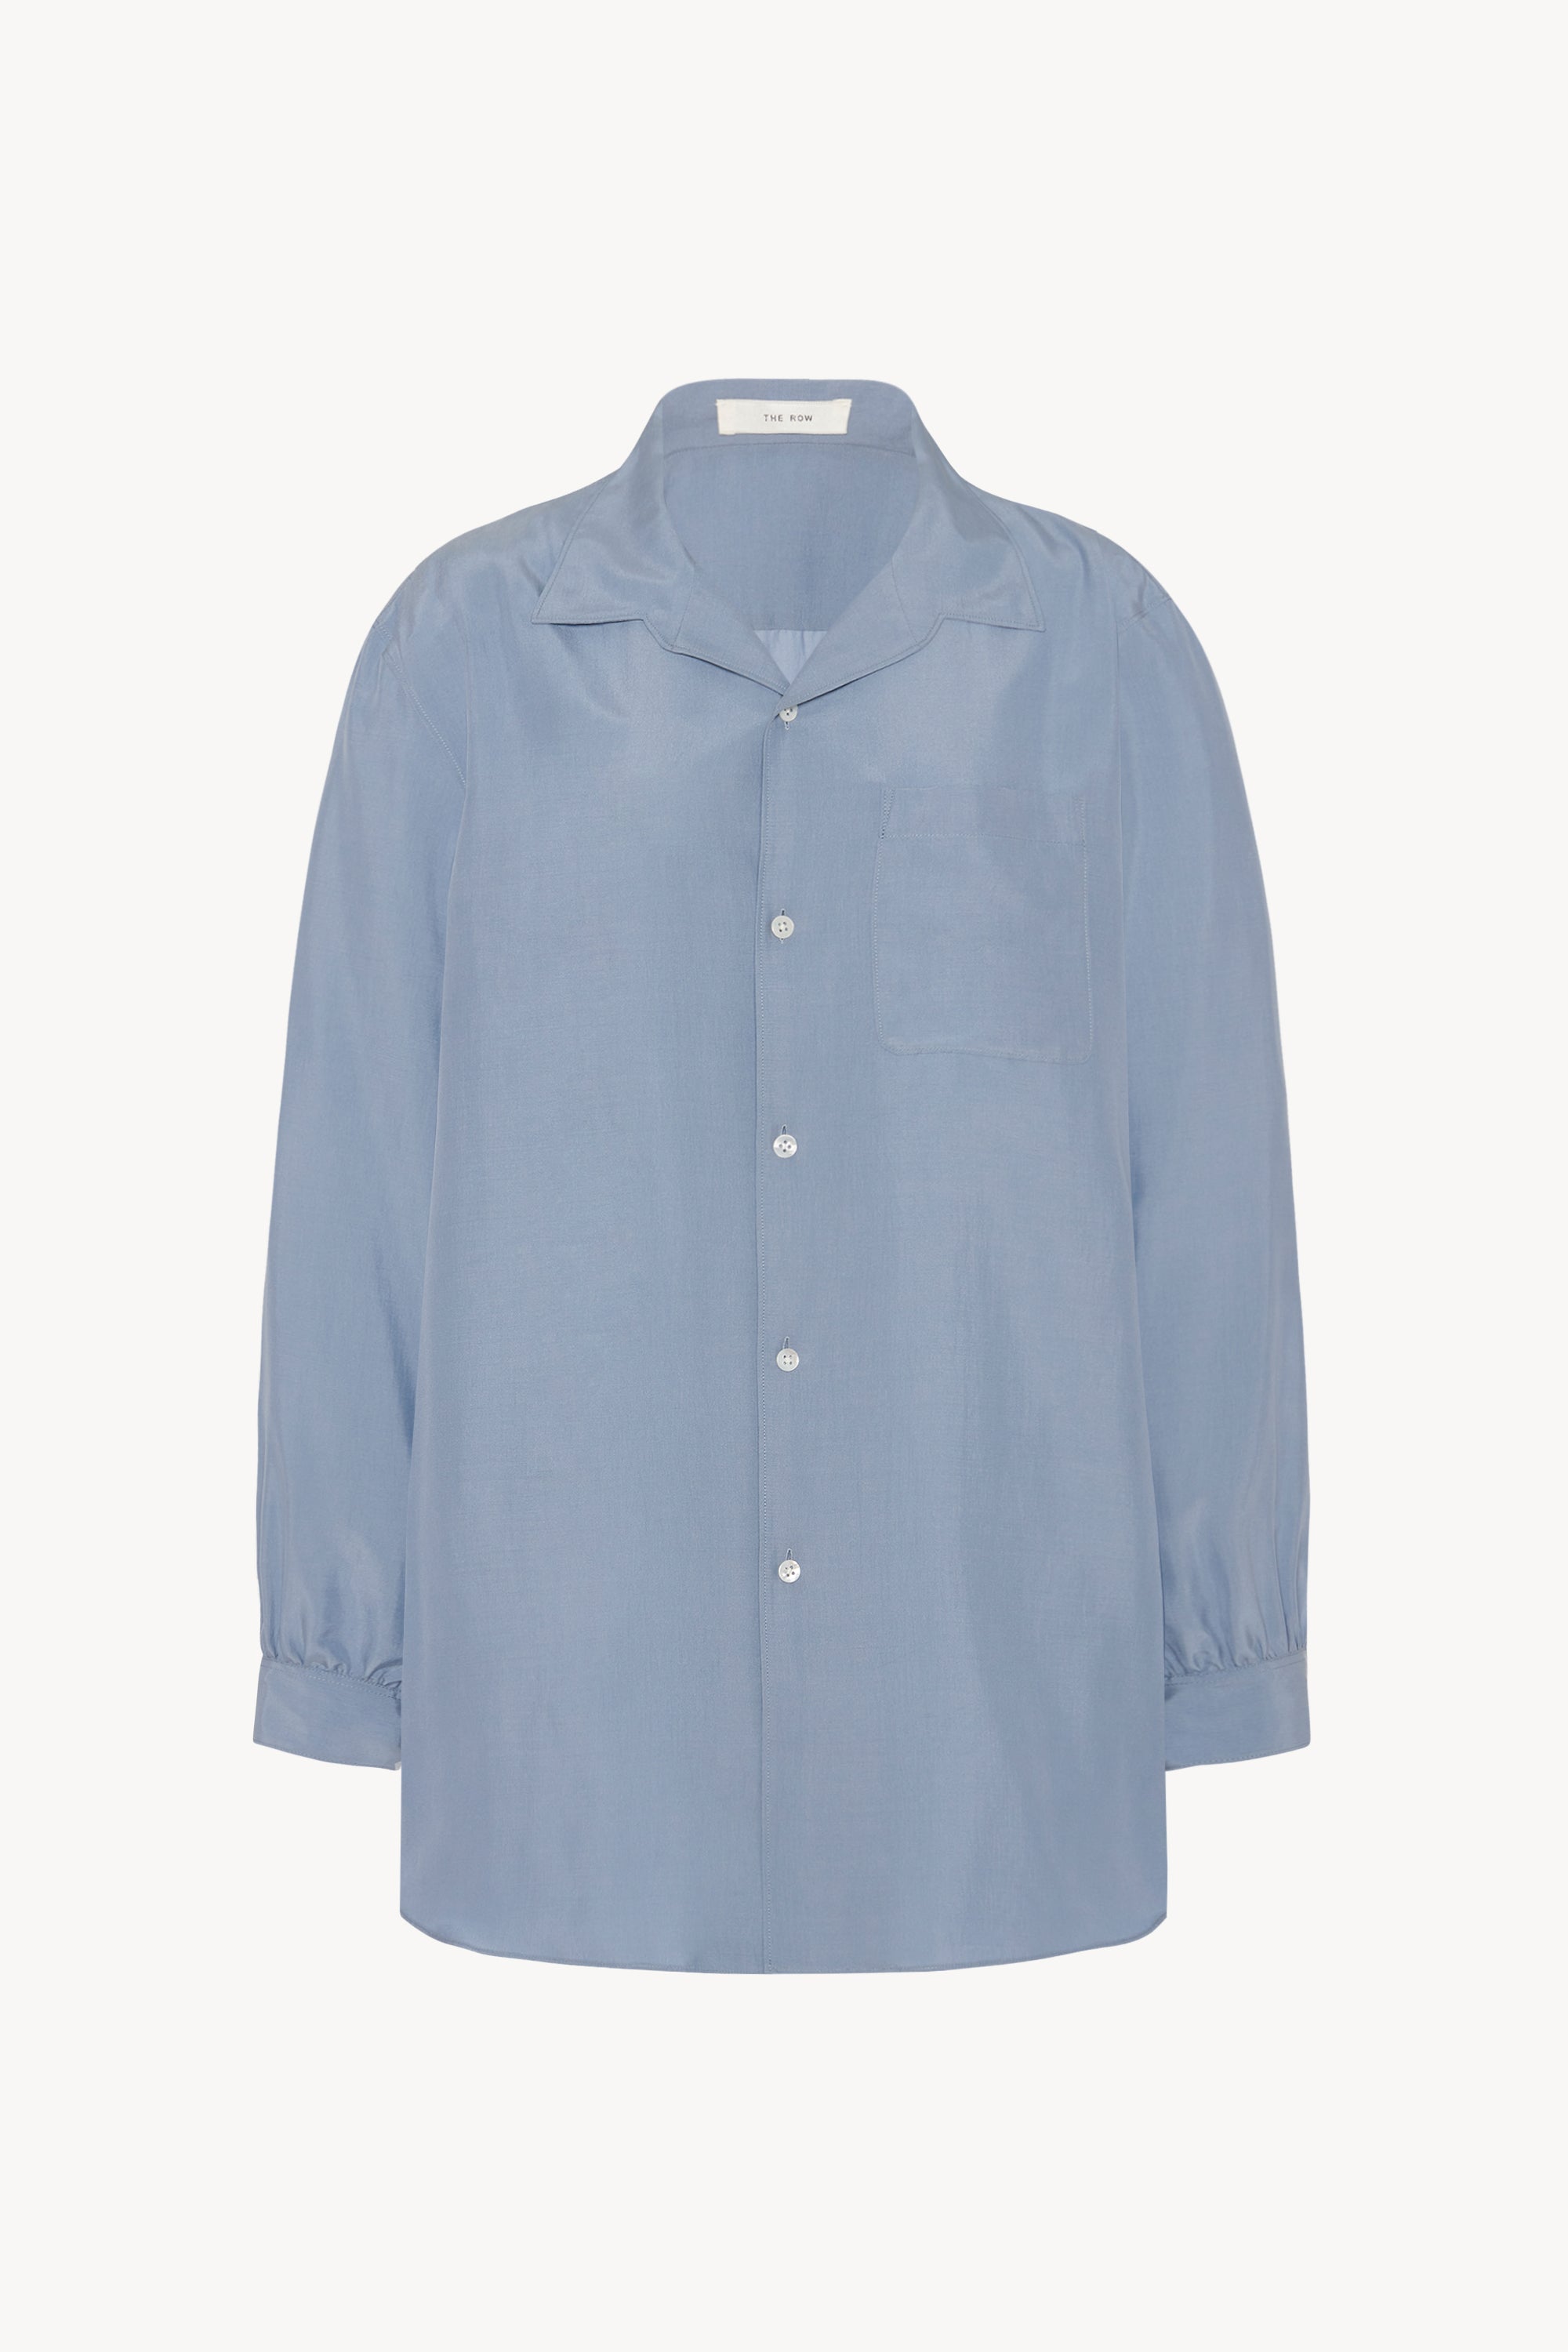 Kiton Shirt Blue in Silk – The Row